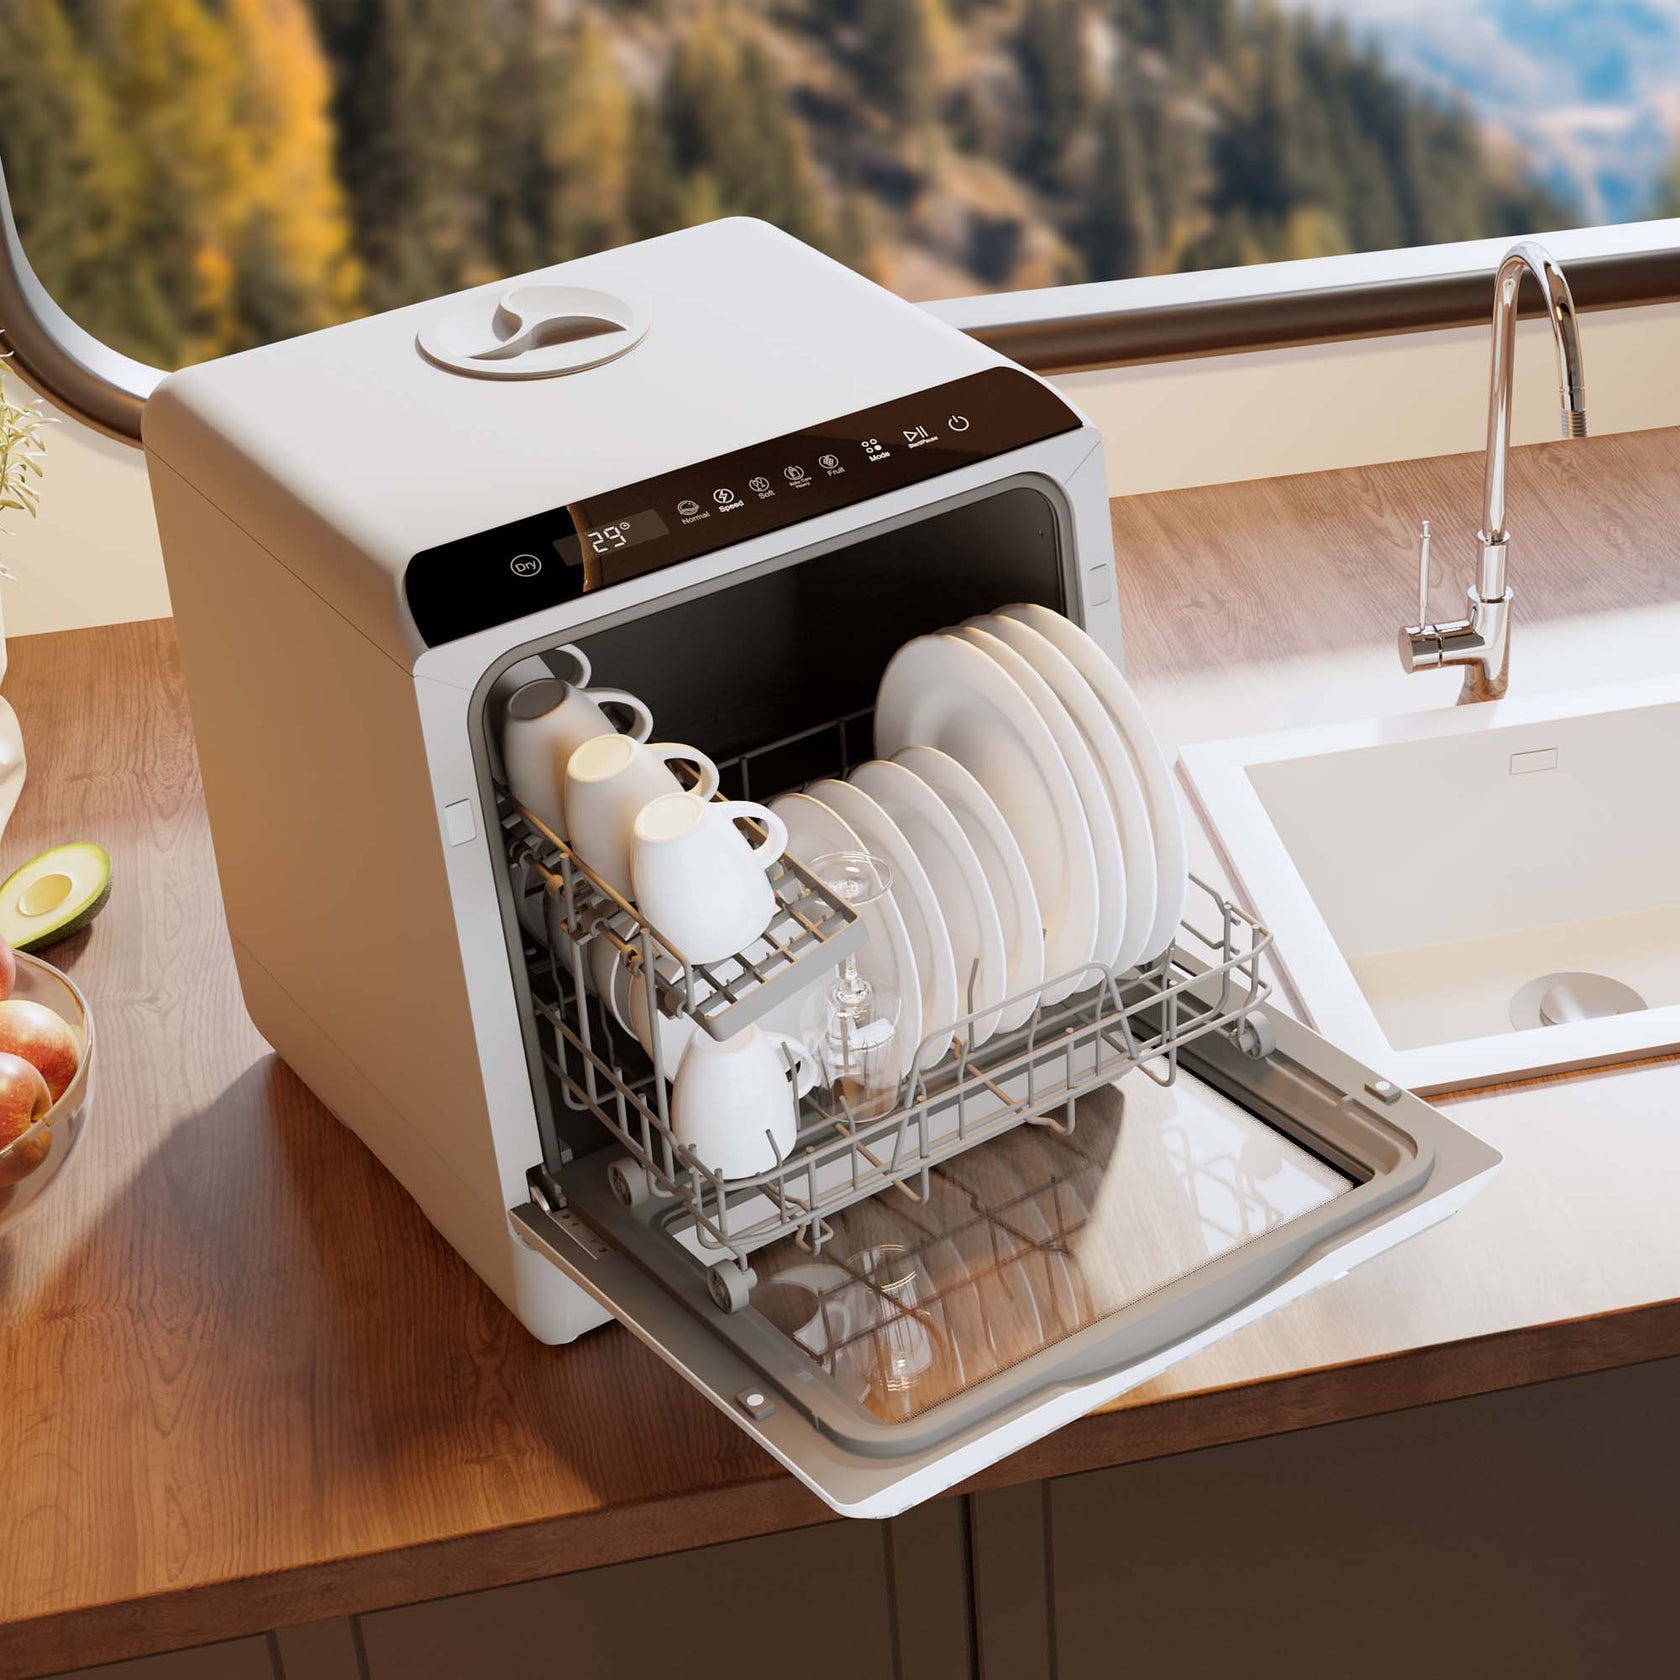 Lave-vaisselle compact de comptoir HAVA R01 remis à neuf